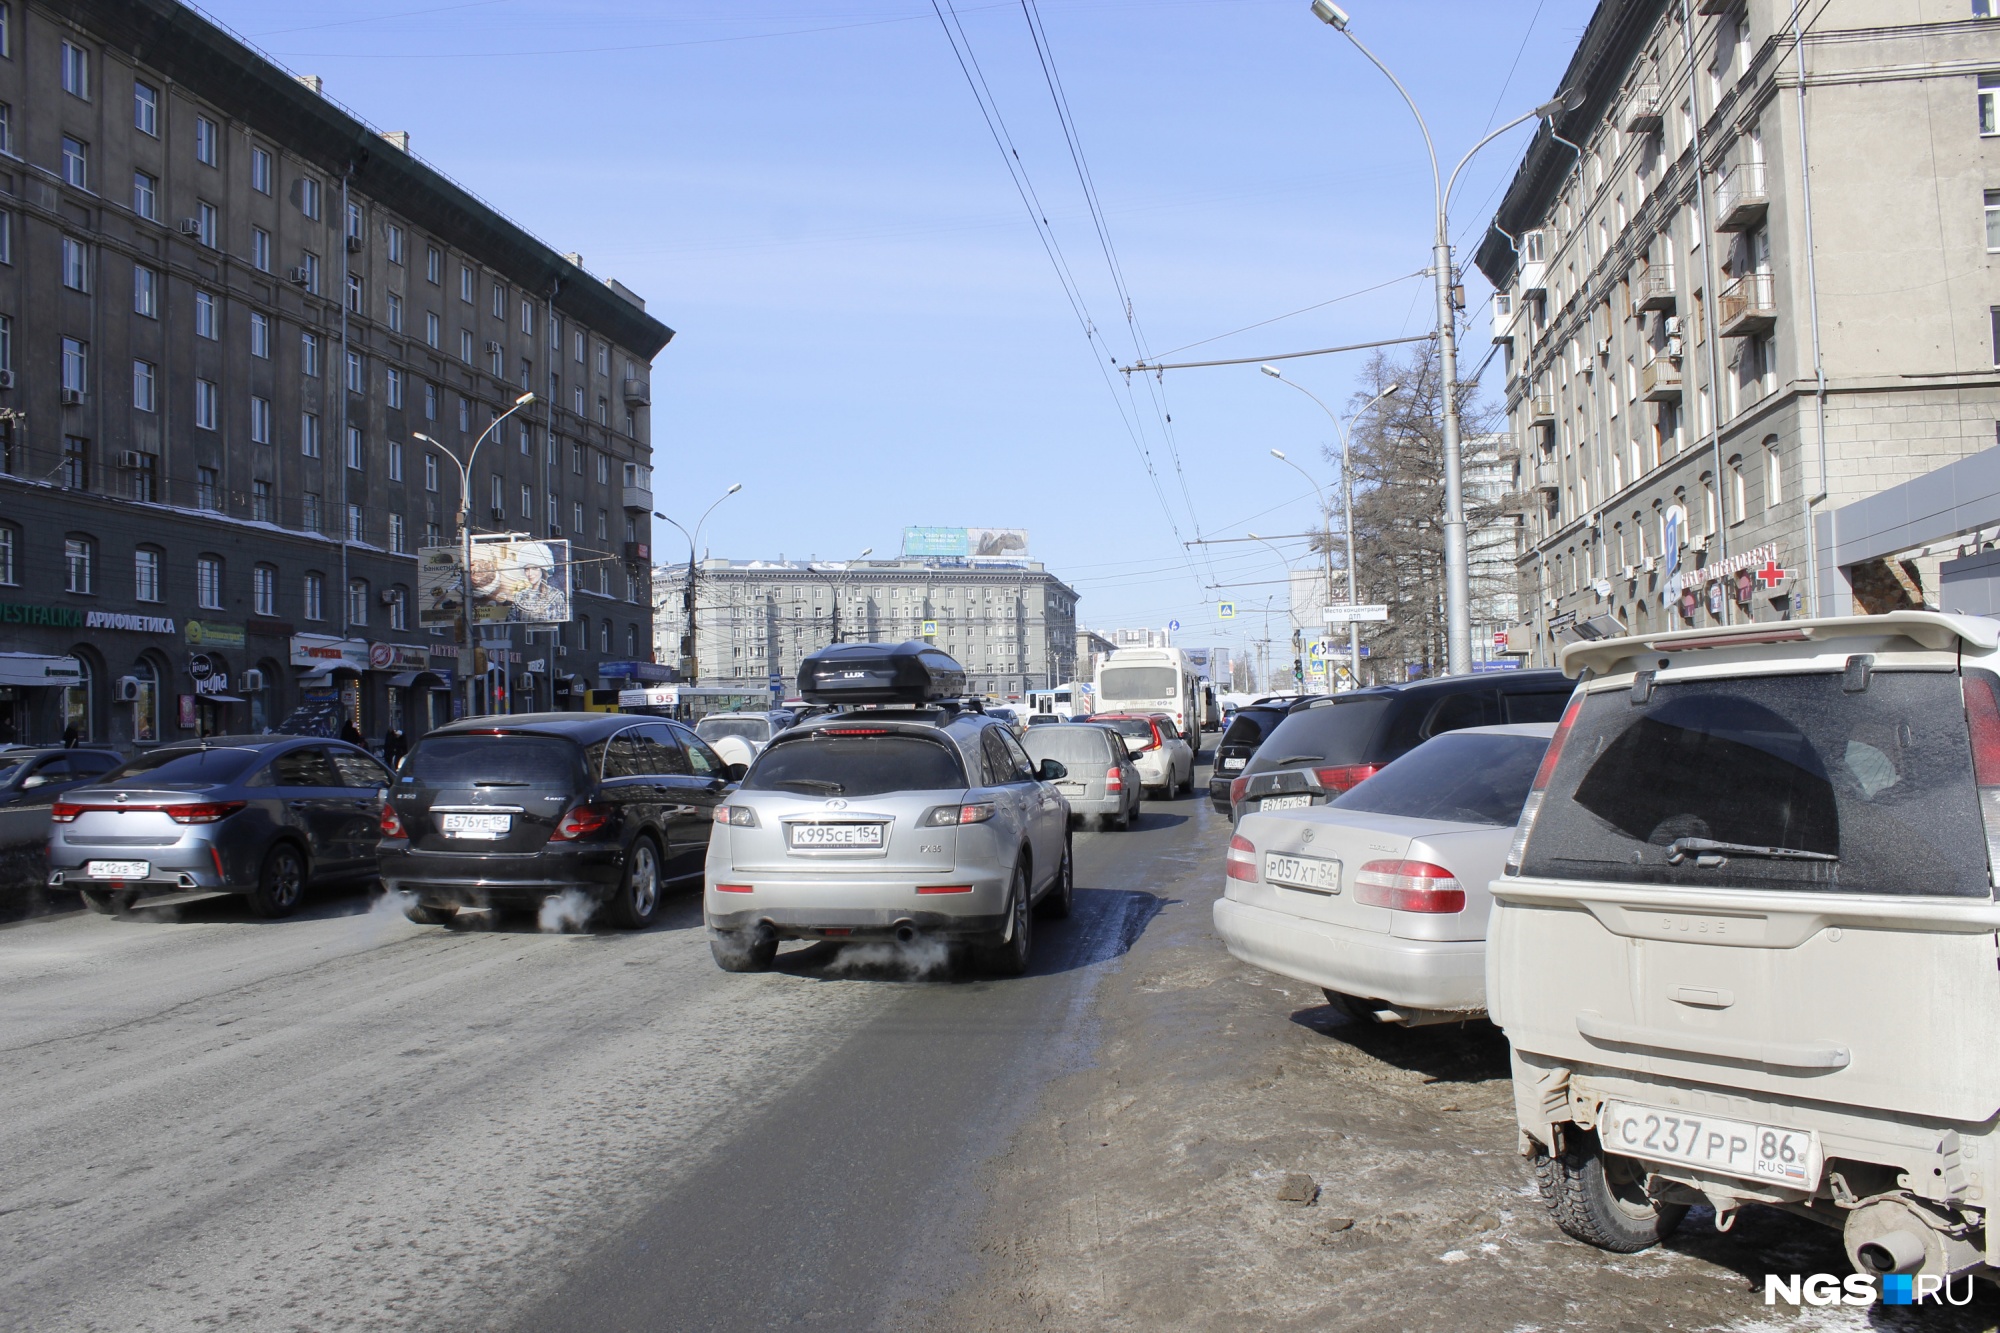 Нарушение правил парковки Новосибирск красный проспект